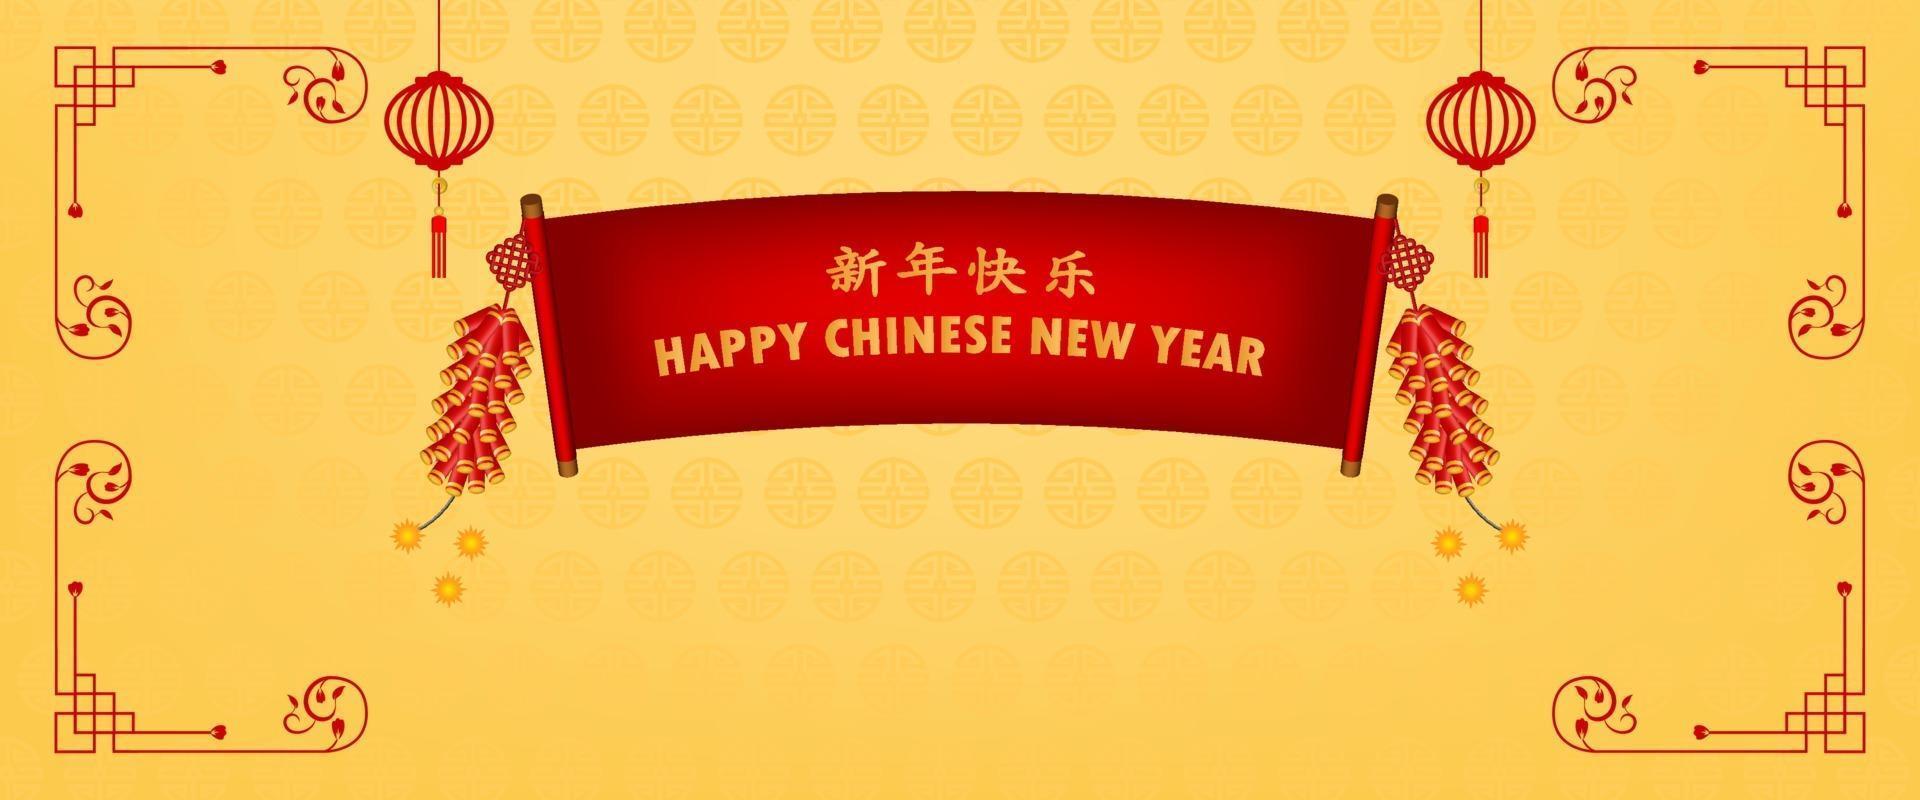 Banner glückliche neue Jahr asiatische Elemente mit Handwerksstil auf gelbem Hintergrund. vektor